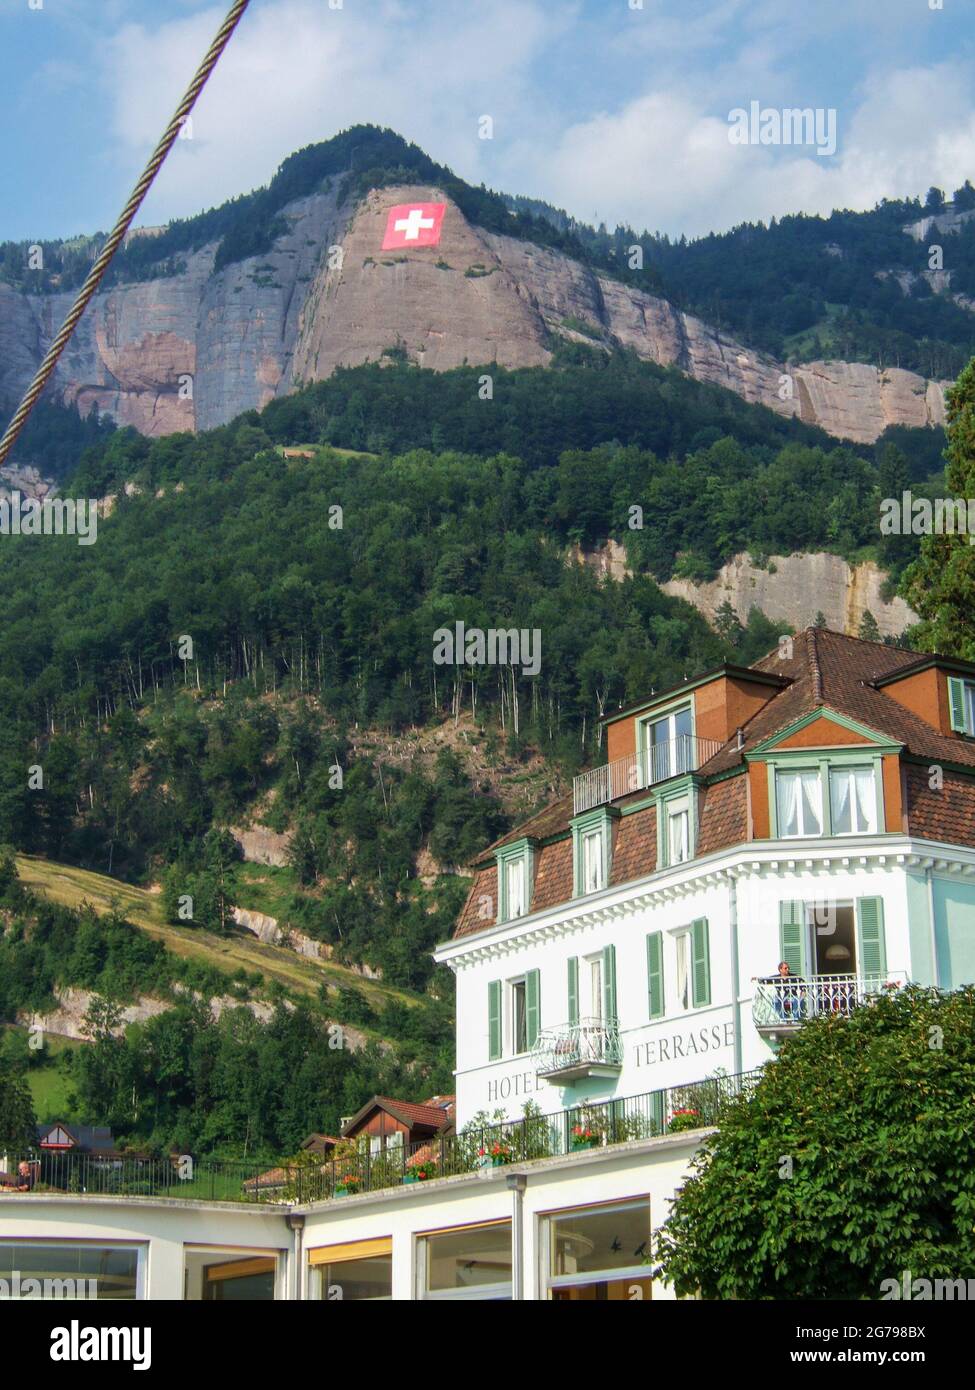 Lago di Lucerna, Svizzera: Agosto 10 2005: Un vecchio hotel bianco con persiane verdi di fronte ad una grande montagna con una parete rocciosa su cui una bandiera svizzera ca Foto Stock